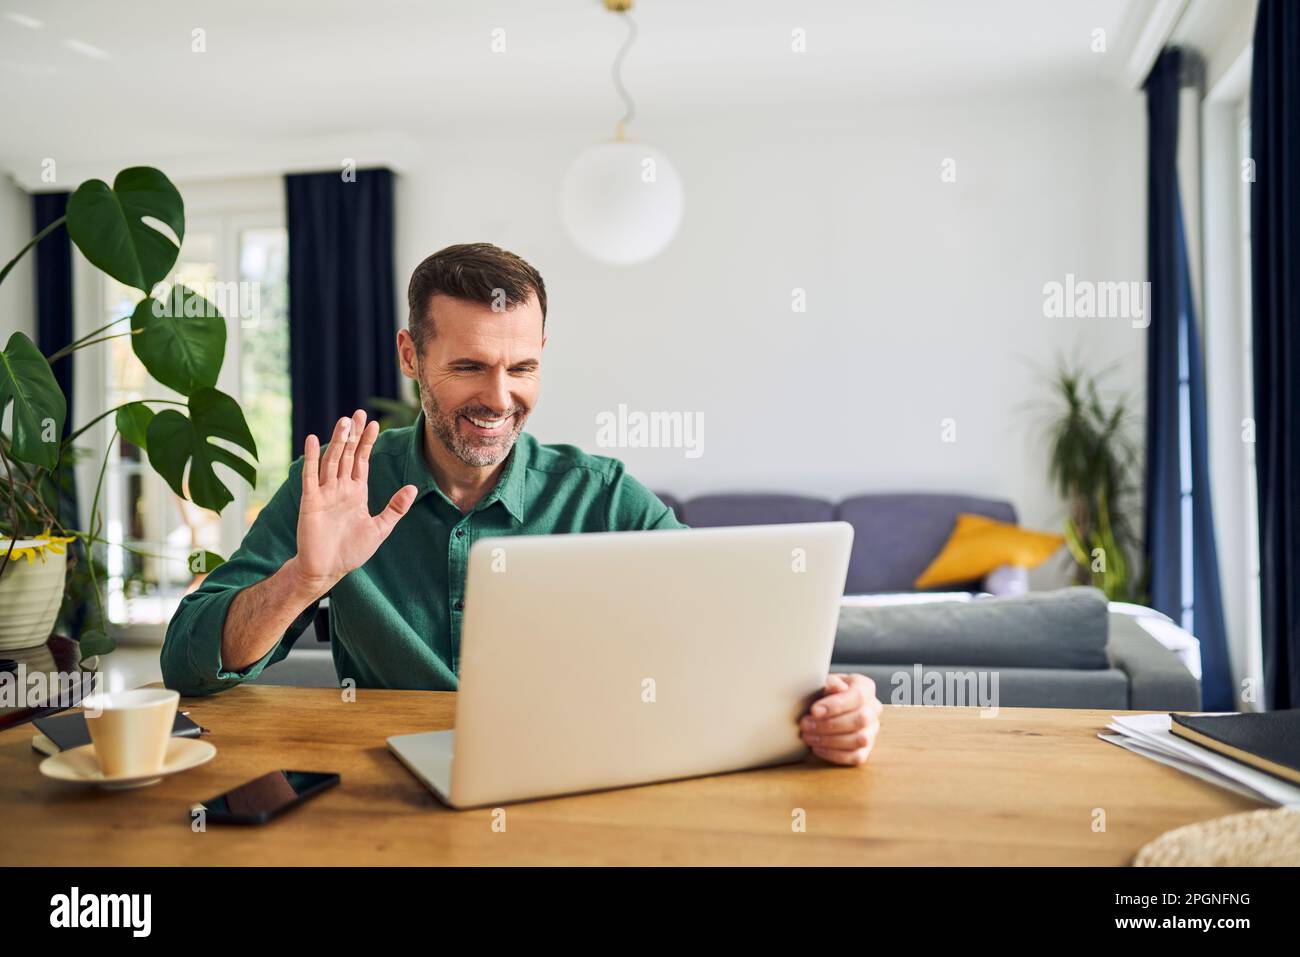 Cheerful man making video call waving at laptop Stock Photo